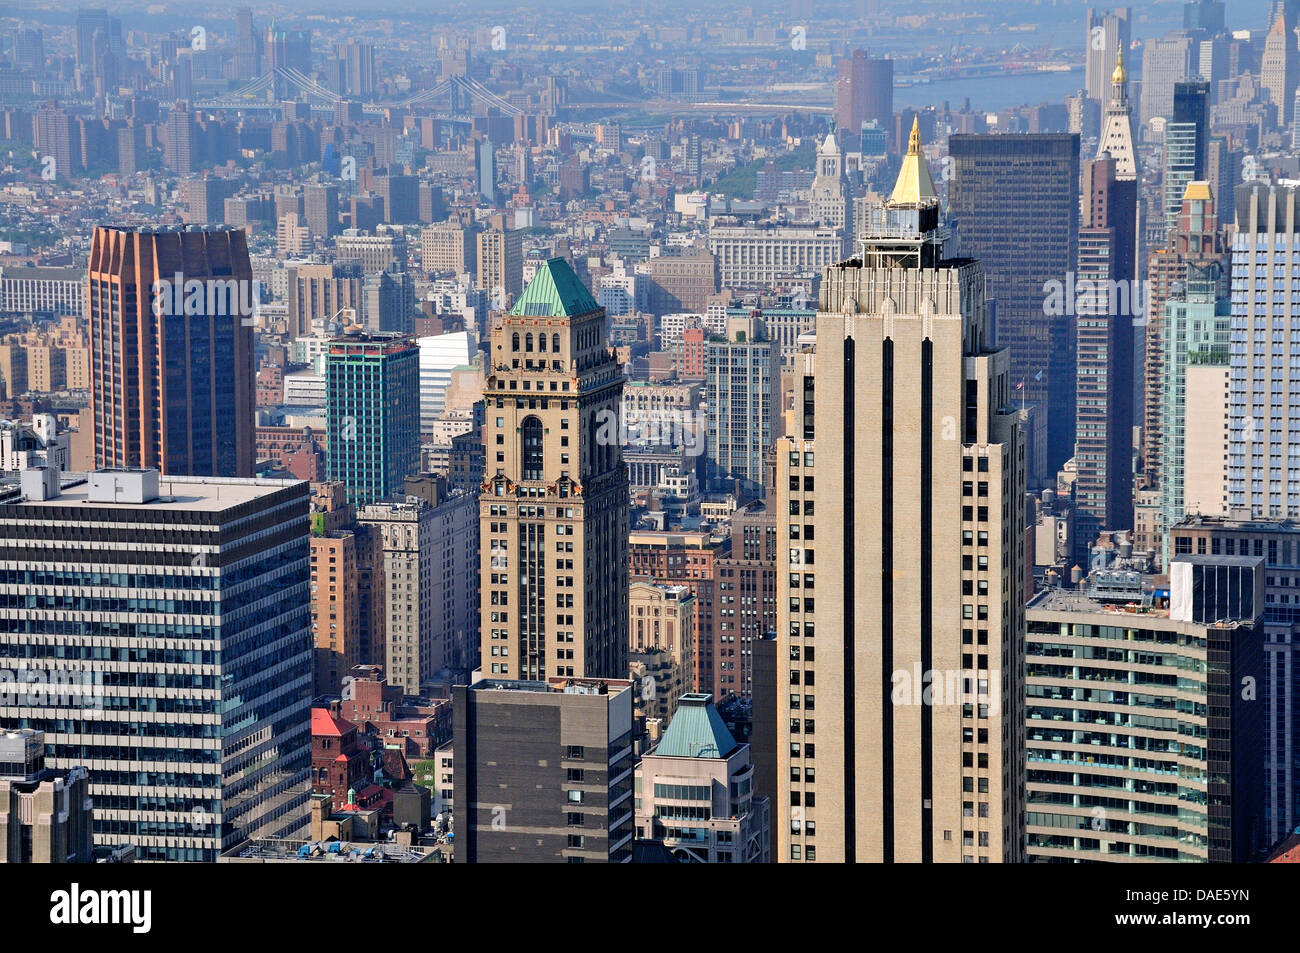 Vue panoramique à partir de la plate-forme d'observation 'Top of the Rock' du Rockefeller Center au centre-ville de Manhattan, USA, New York, Manhattan Banque D'Images